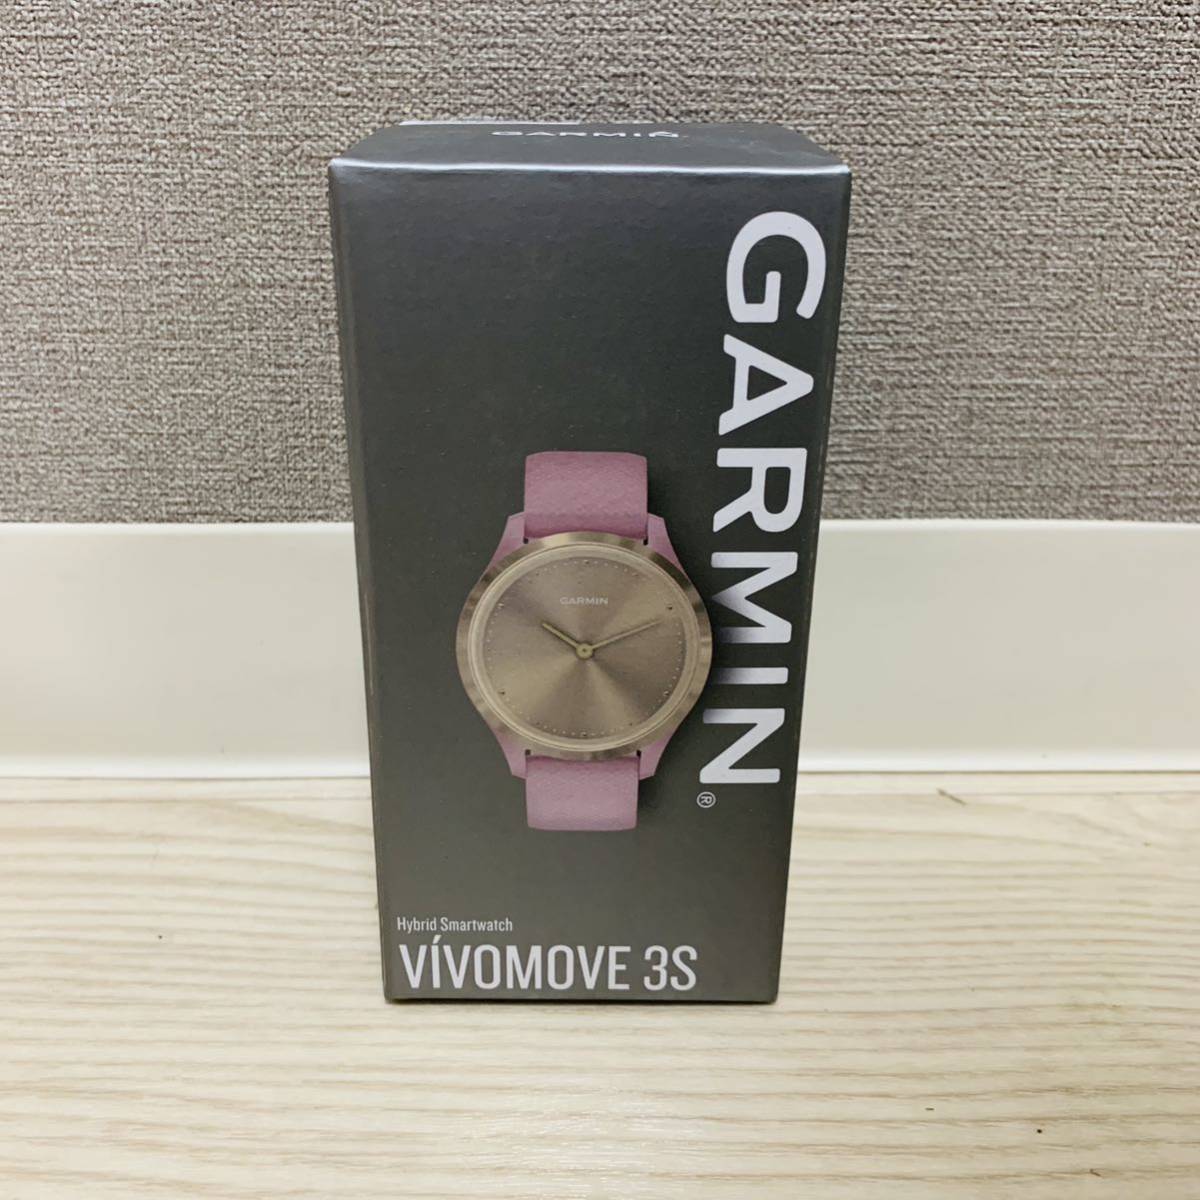 品質満点 Garmin(ガーミン) vivomove 3S 針付きハイブリッドスマートウォッチ Sサイズ フル充電で4日間稼働/Suica スマートウォッチ本体